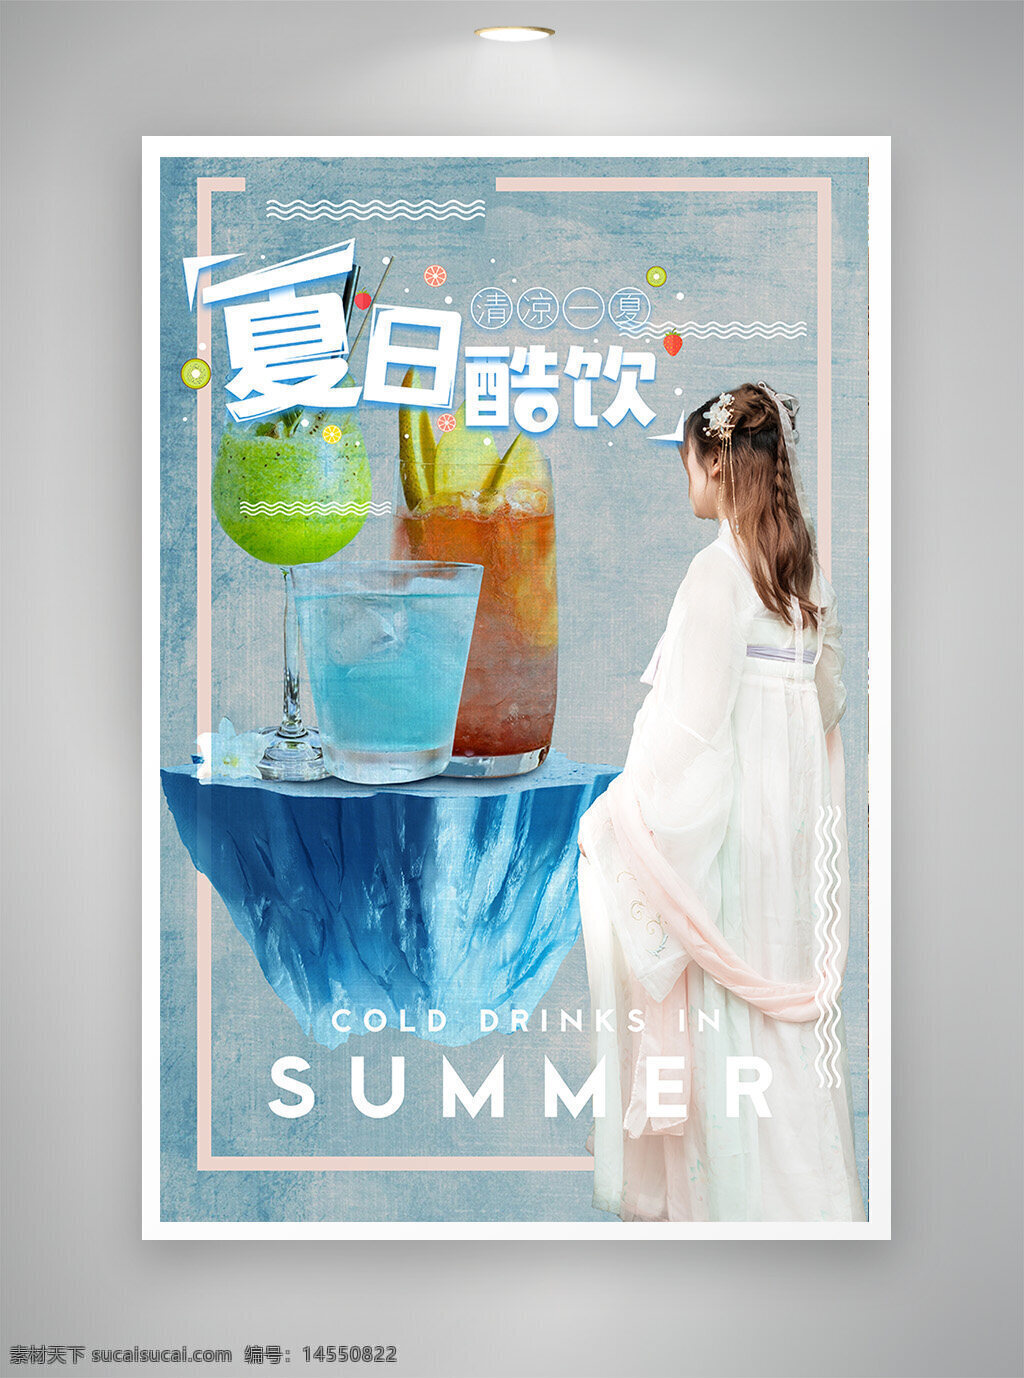 中国风海报 促销海报 节日海报 古风海报 夏日饮品